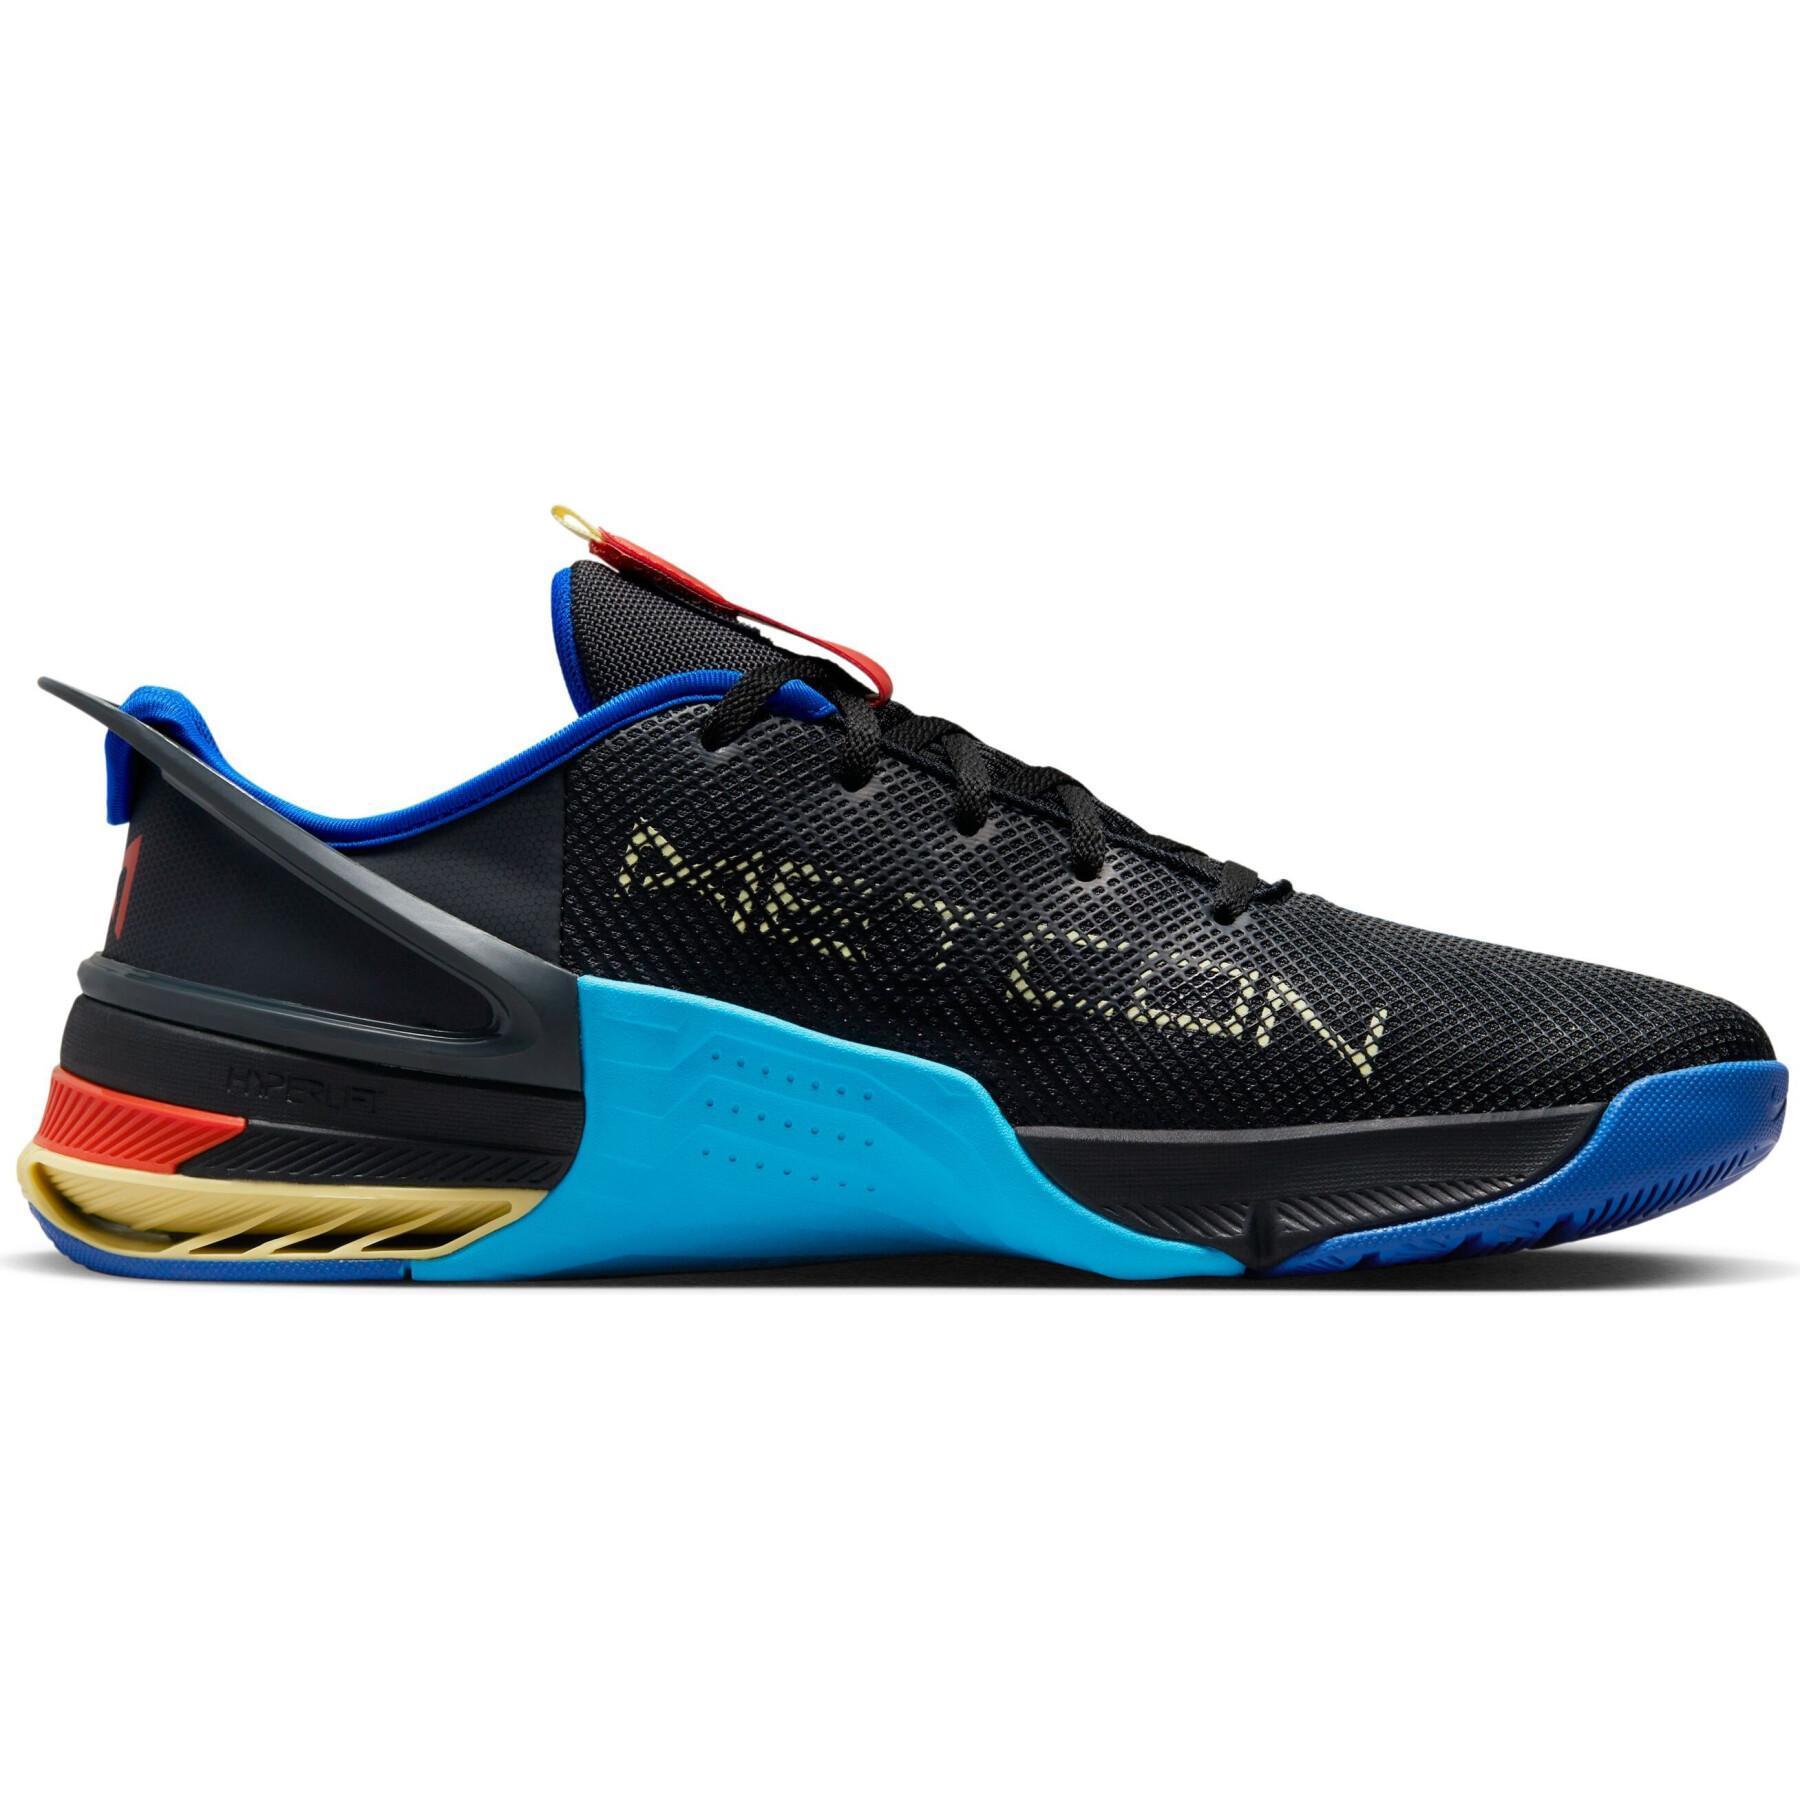 Chaussures de running Nike Metcon 8 FlyEase